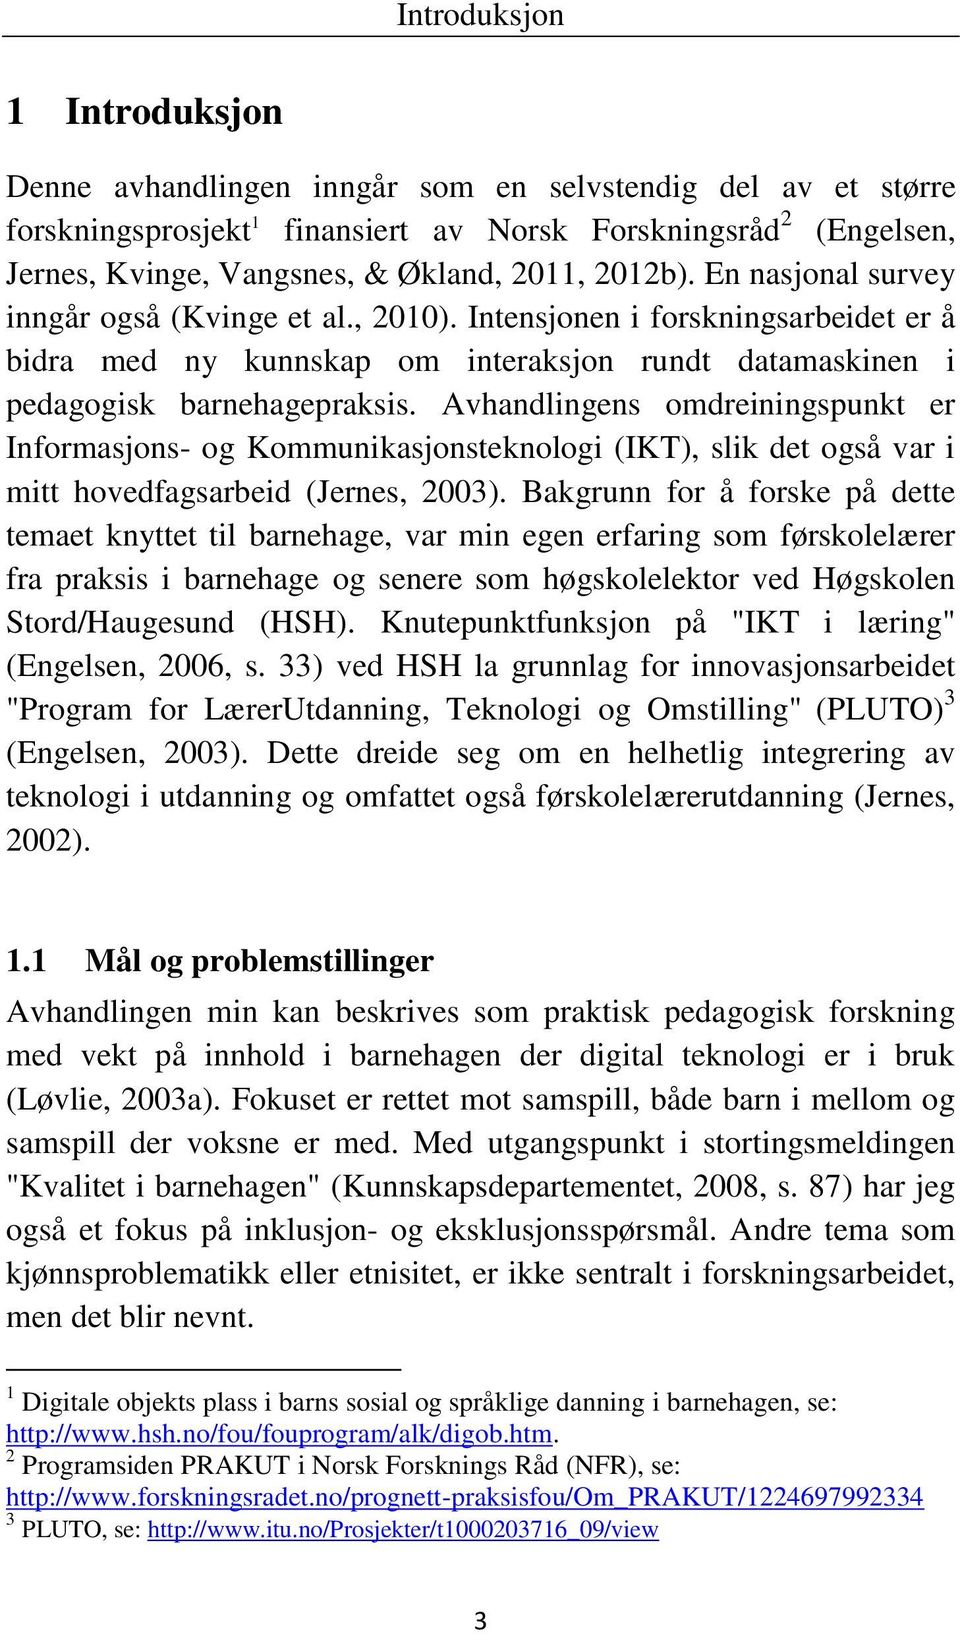 Avhandlingens omdreiningspunkt er Informasjons- og Kommunikasjonsteknologi (IKT), slik det også var i mitt hovedfagsarbeid (Jernes, 2003).